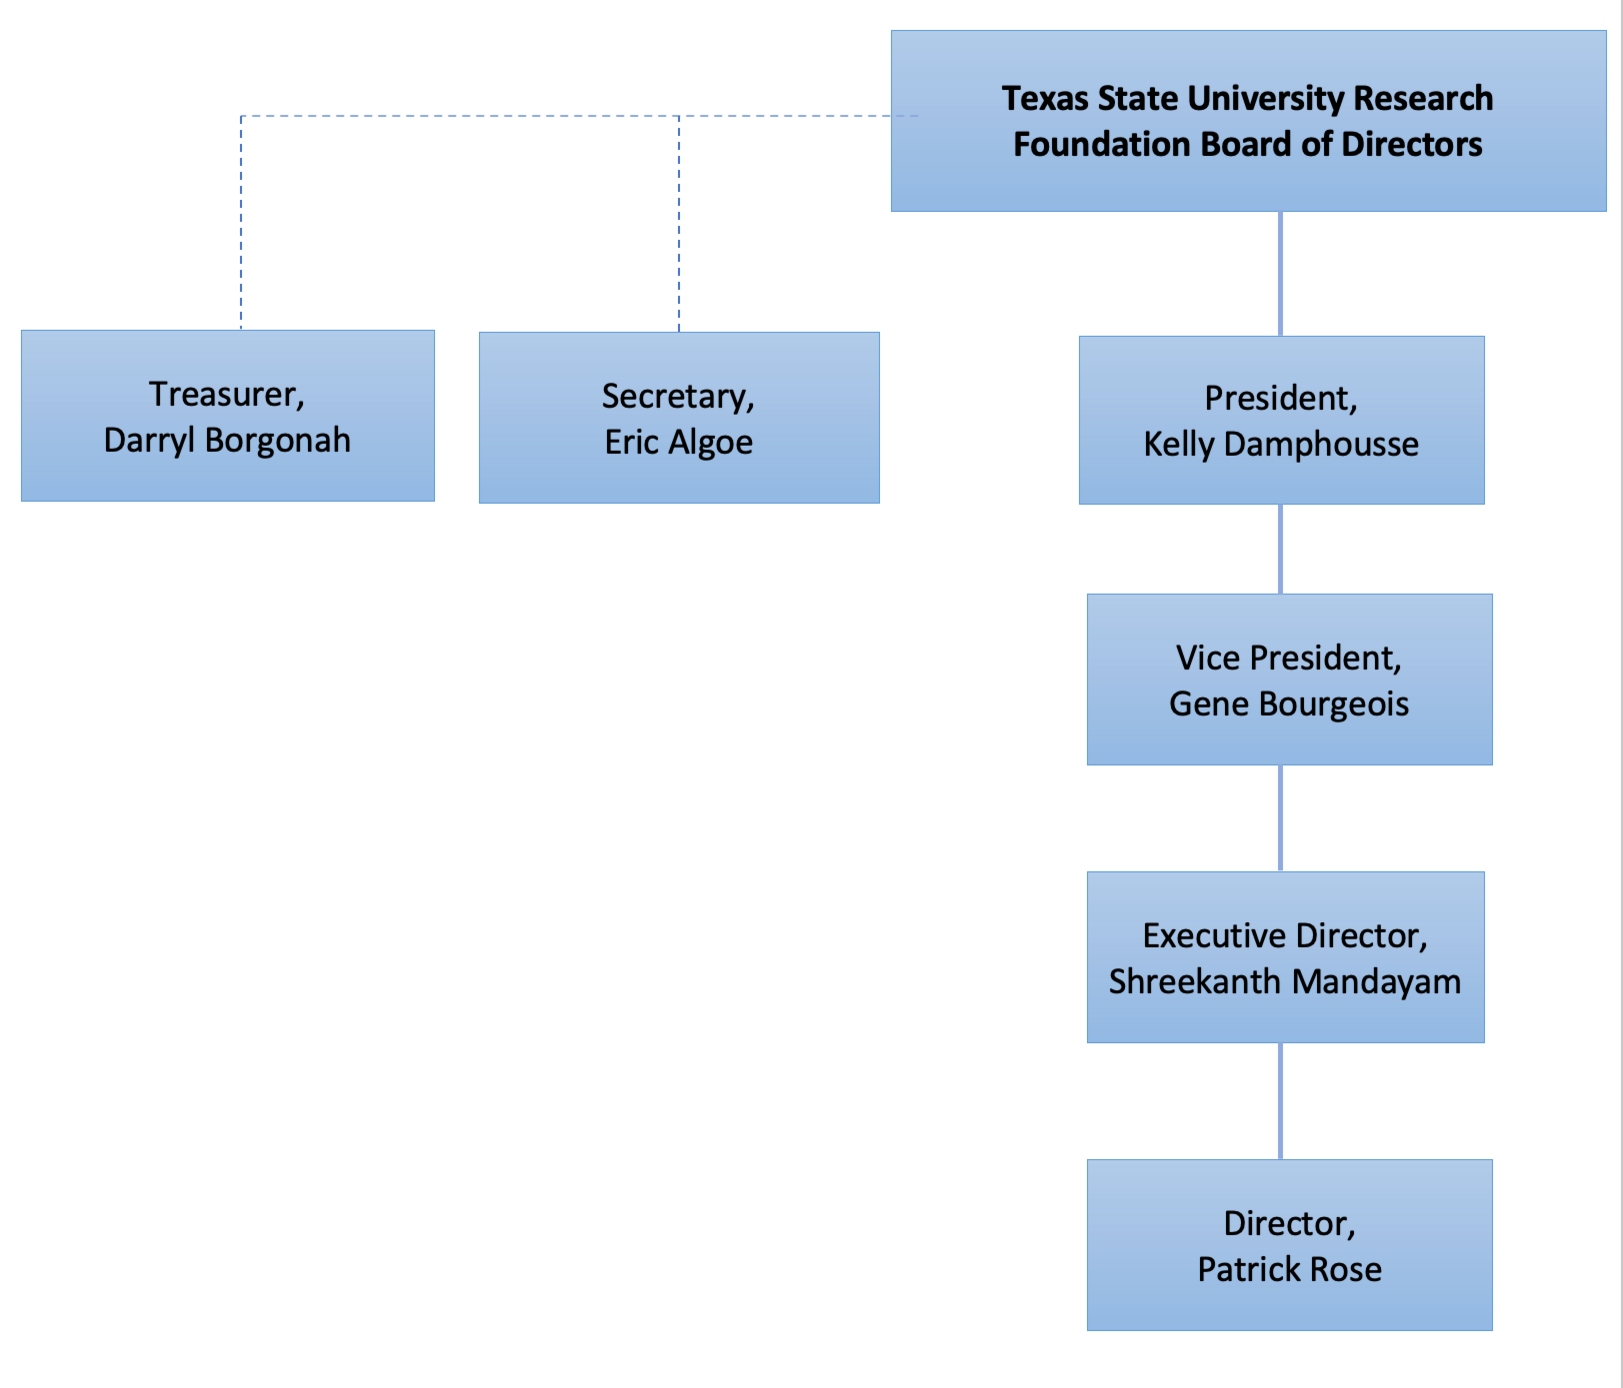 Texas State University Research Foundation Organizational Chart